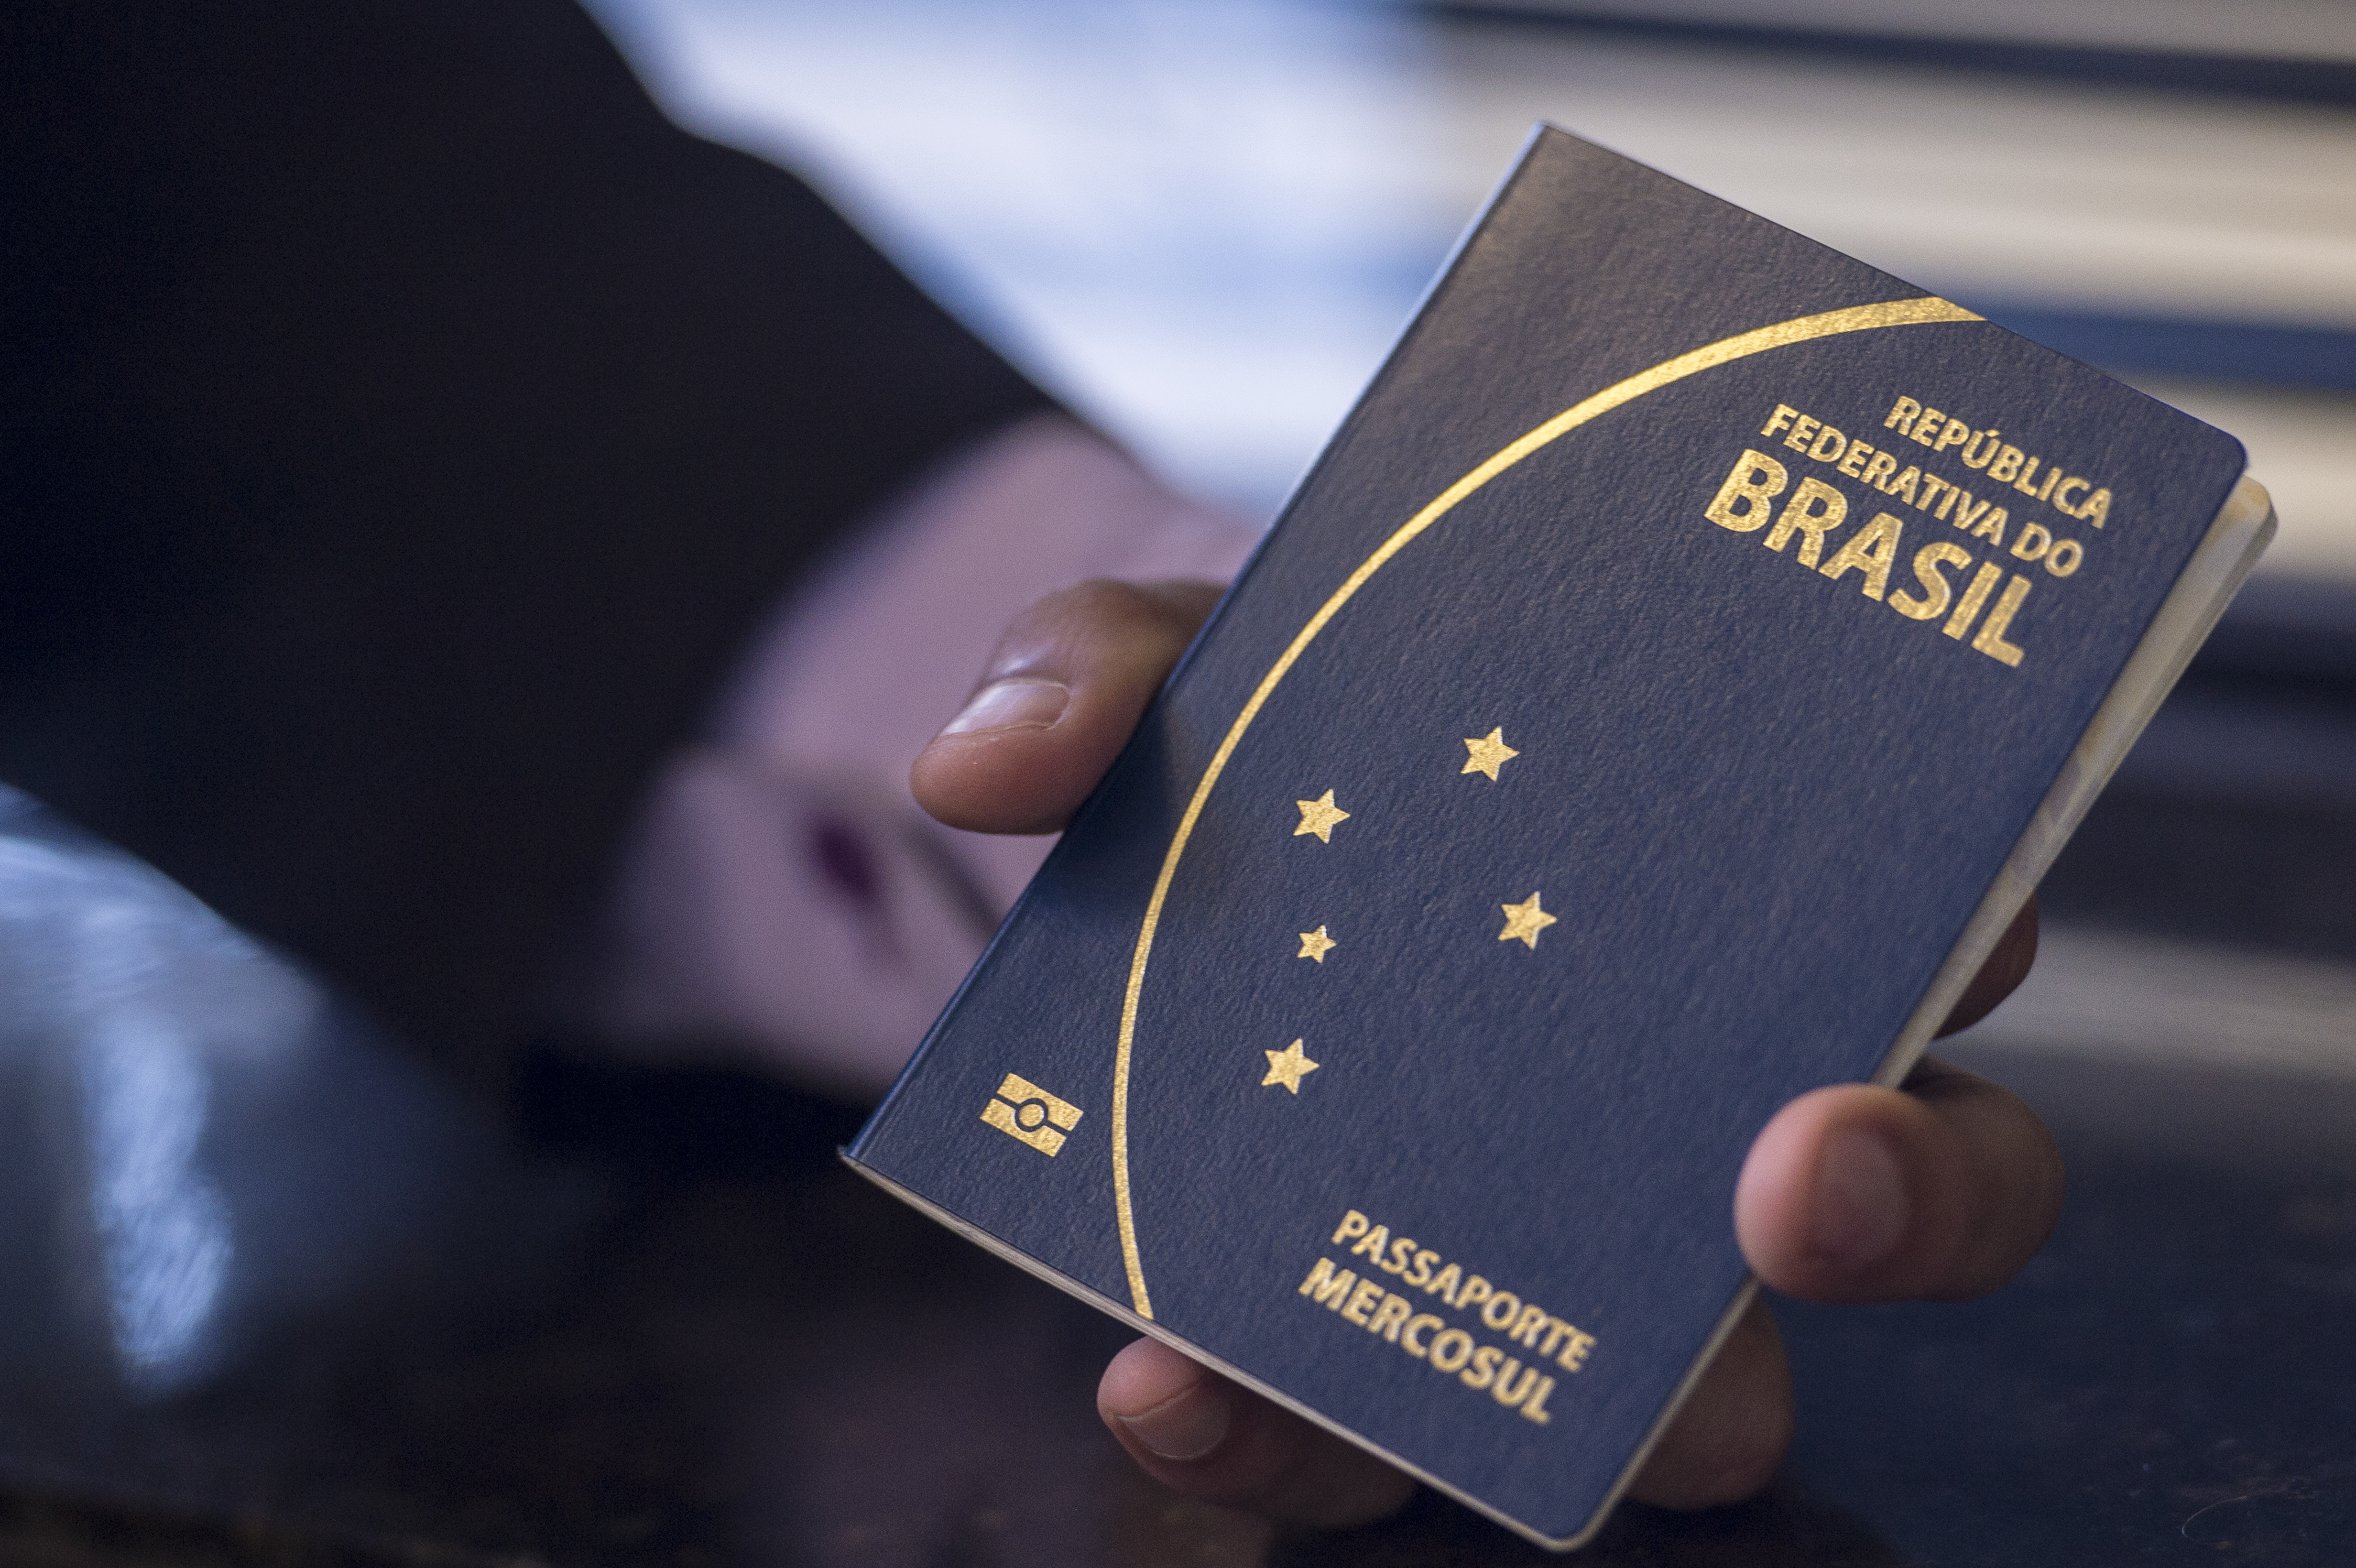 VIAGENS: Emissão de passaporte em Porto Velho muda de local